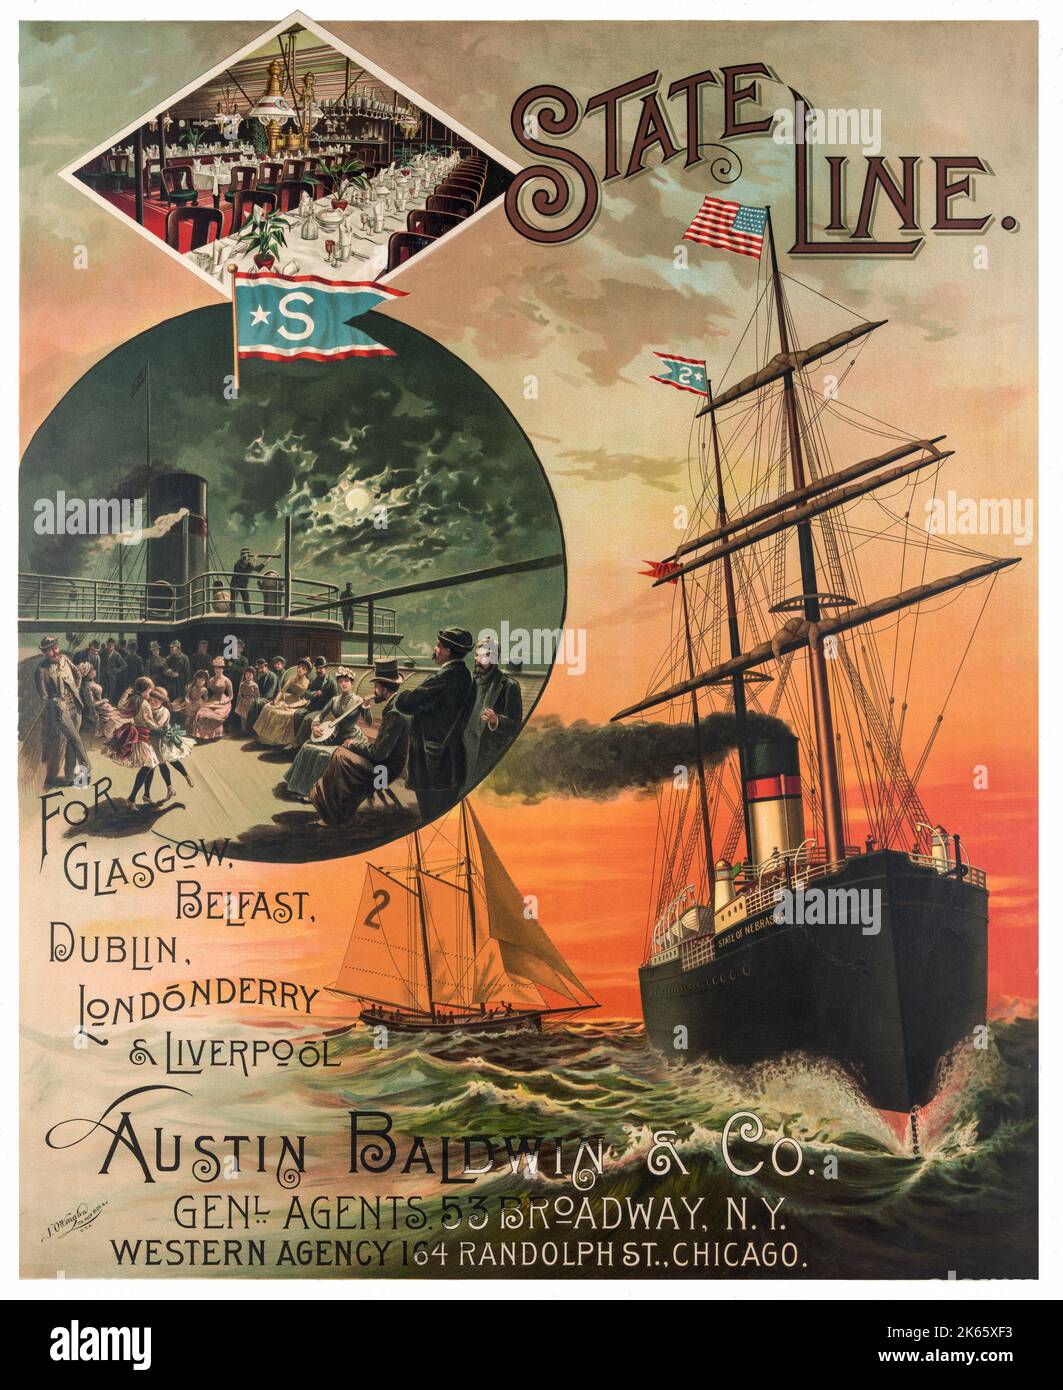 Werbeplakat für State Line, mit Fahrten zwischen Liverpool, Glasgow, Belfast, Dublin und Londonderry (aka Derry). Die Abbildung zeigt das Schiff 'State of Nebraska' und ein Segelboot auf dem Wasser, mit Einsätzen eines Speisesaals und Menschen an Deck des Schiffes. Erstellt von Jacob Ottmann (1849-1889). Stockfoto